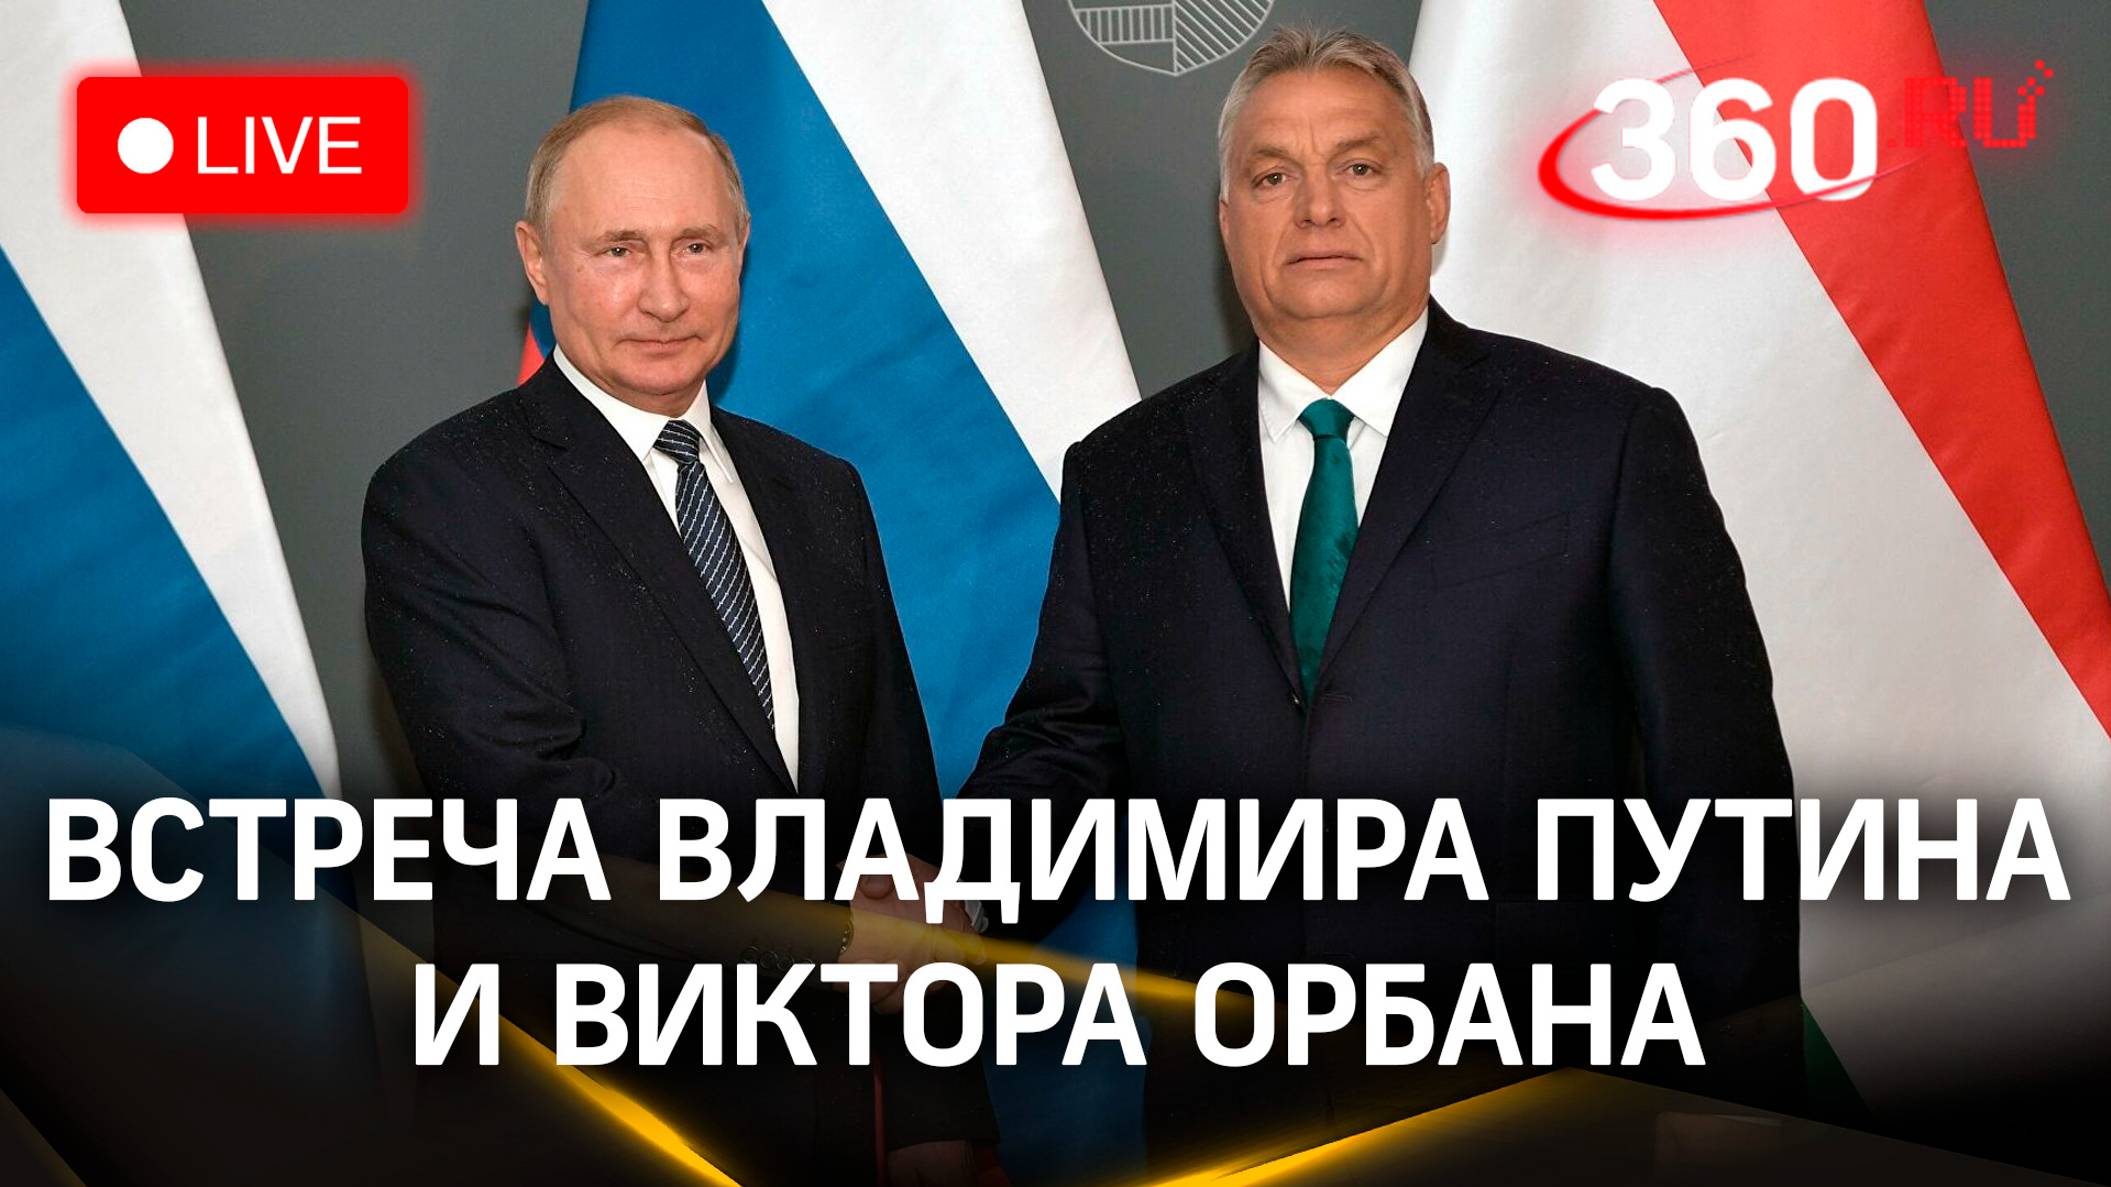 Владимир Путин и Виктор Орбан проводят переговоры. Прямая трансляция